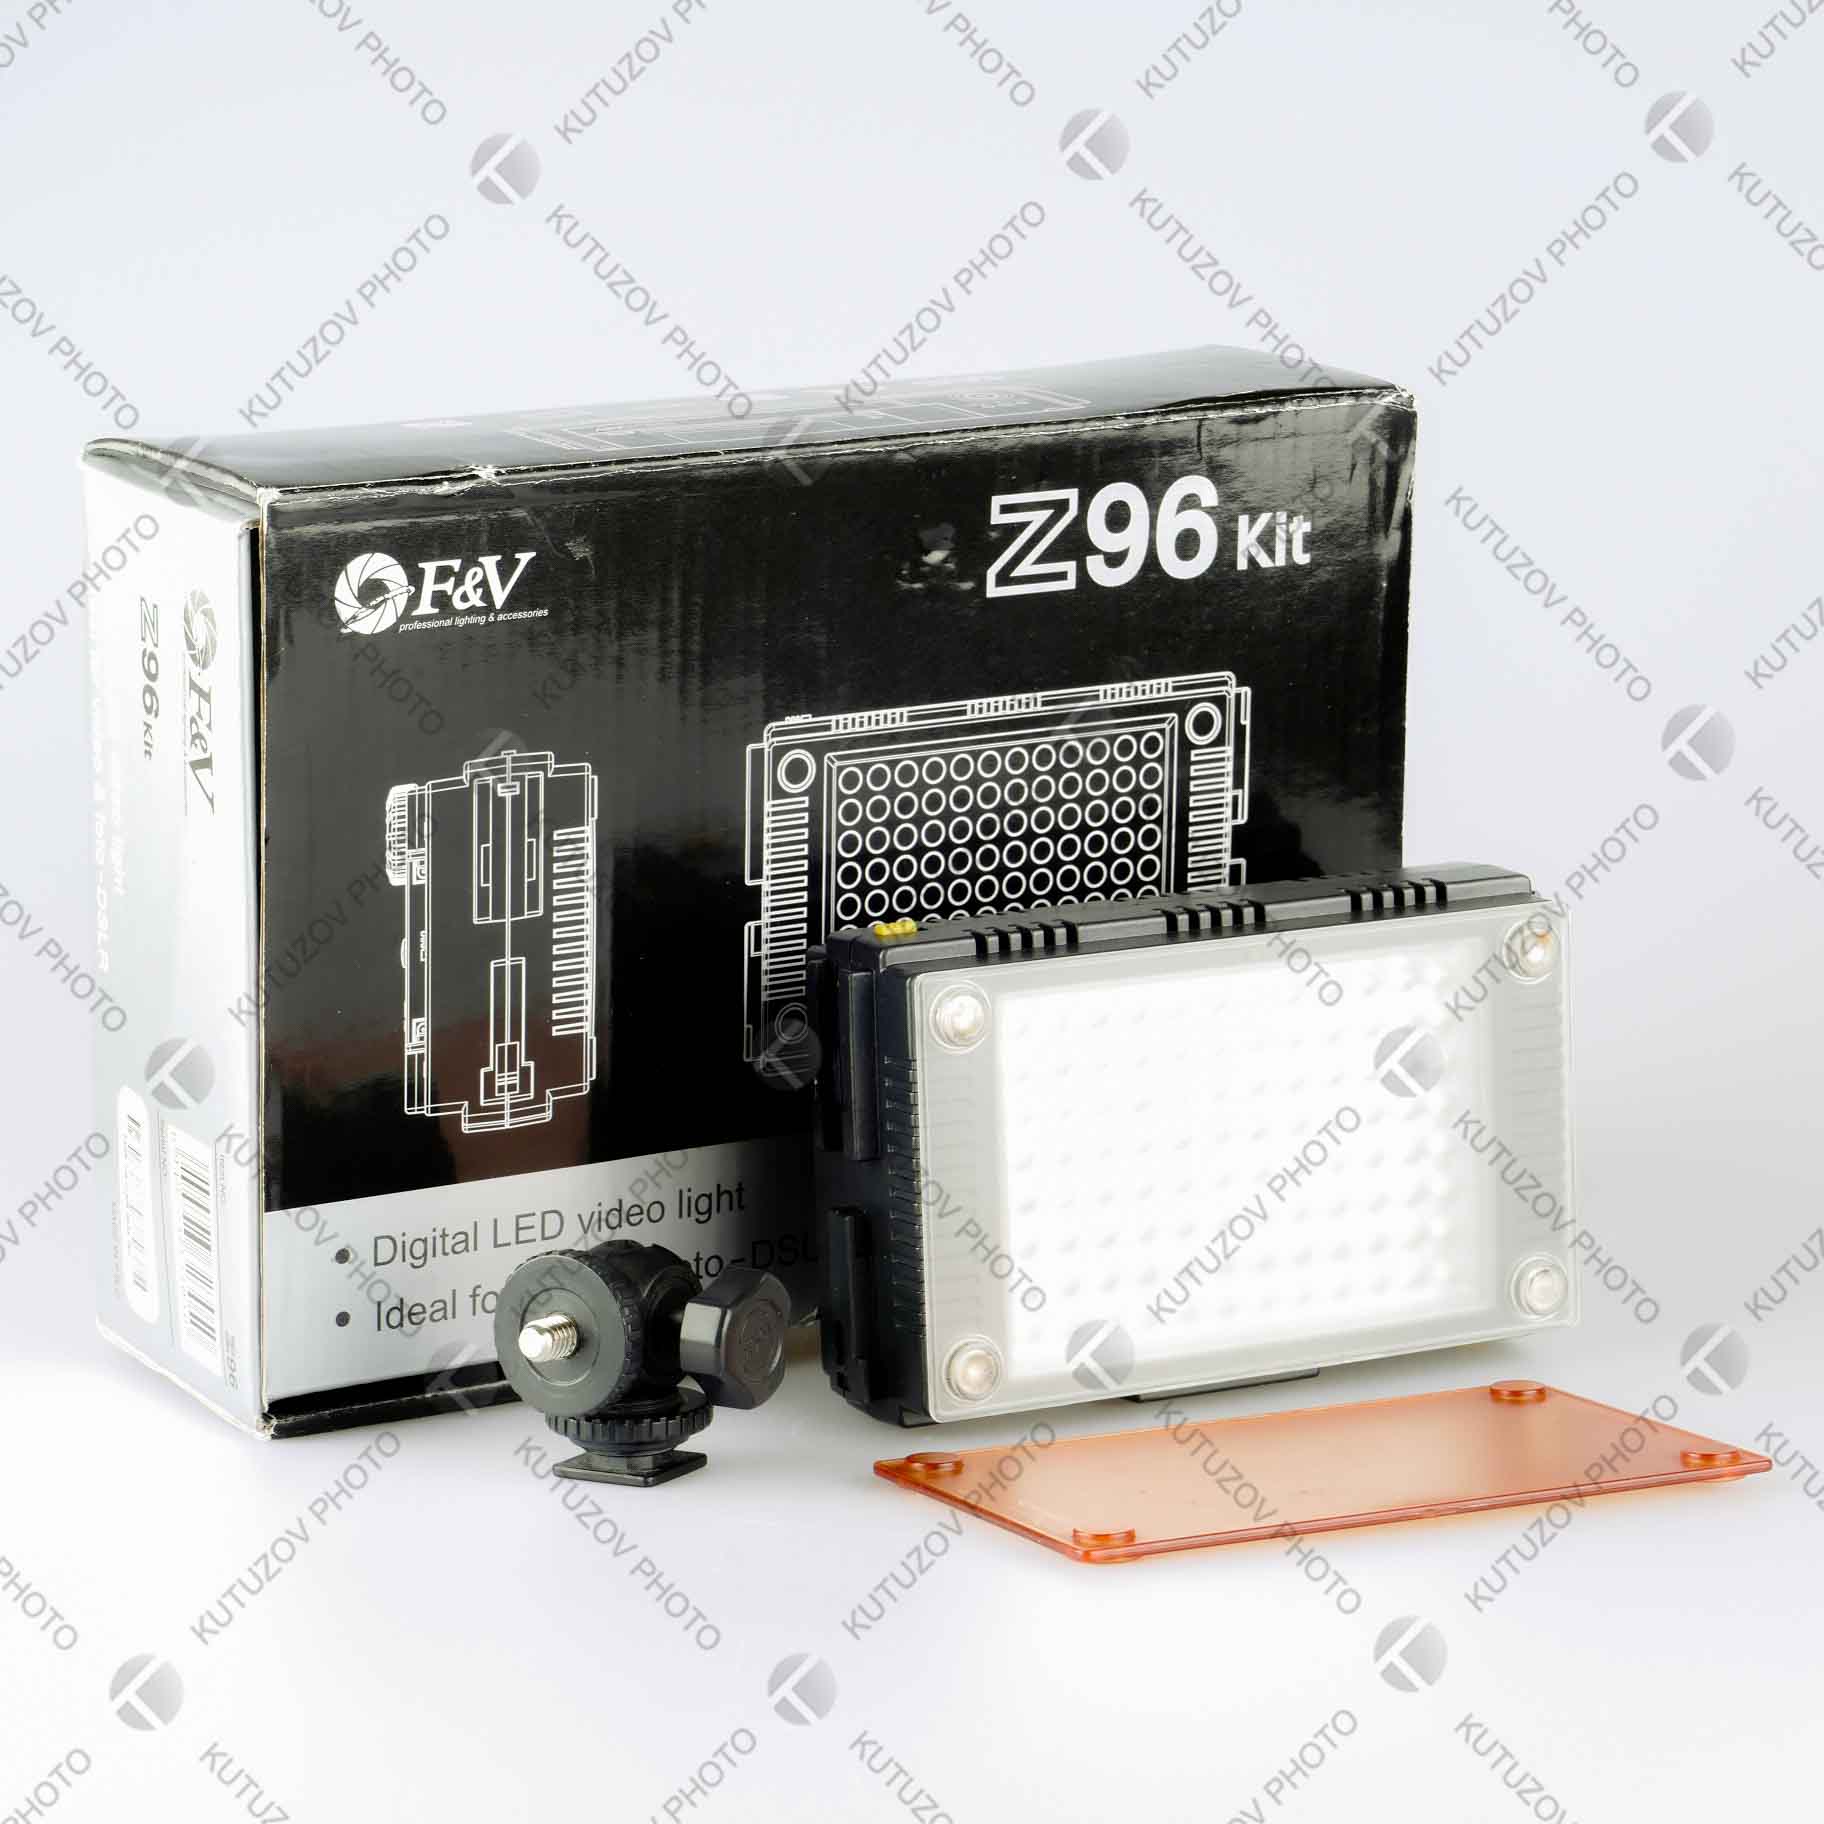 F&V Z96 Kit свет накамерный